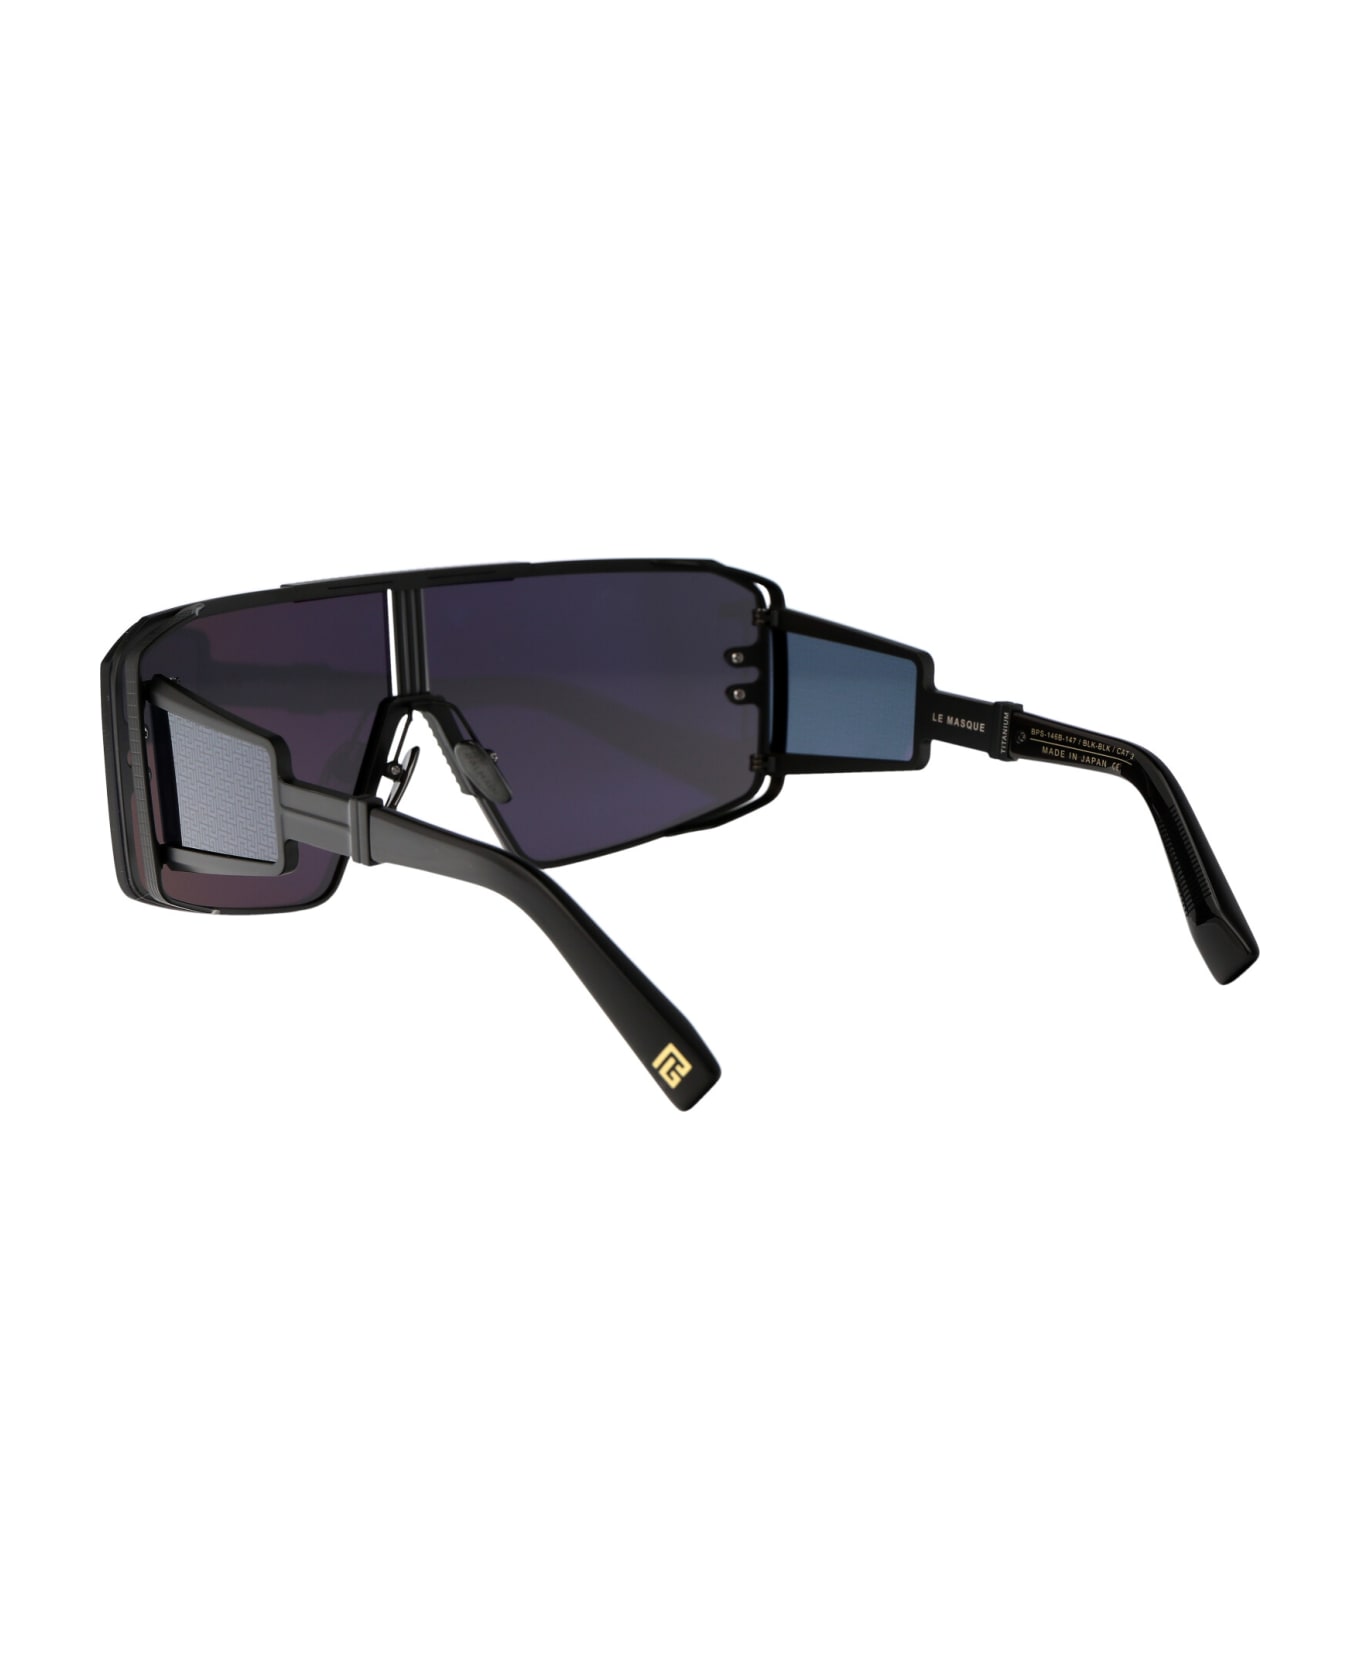 Balmain La Masque Sunglasses - 146B 146B BLK - BLK